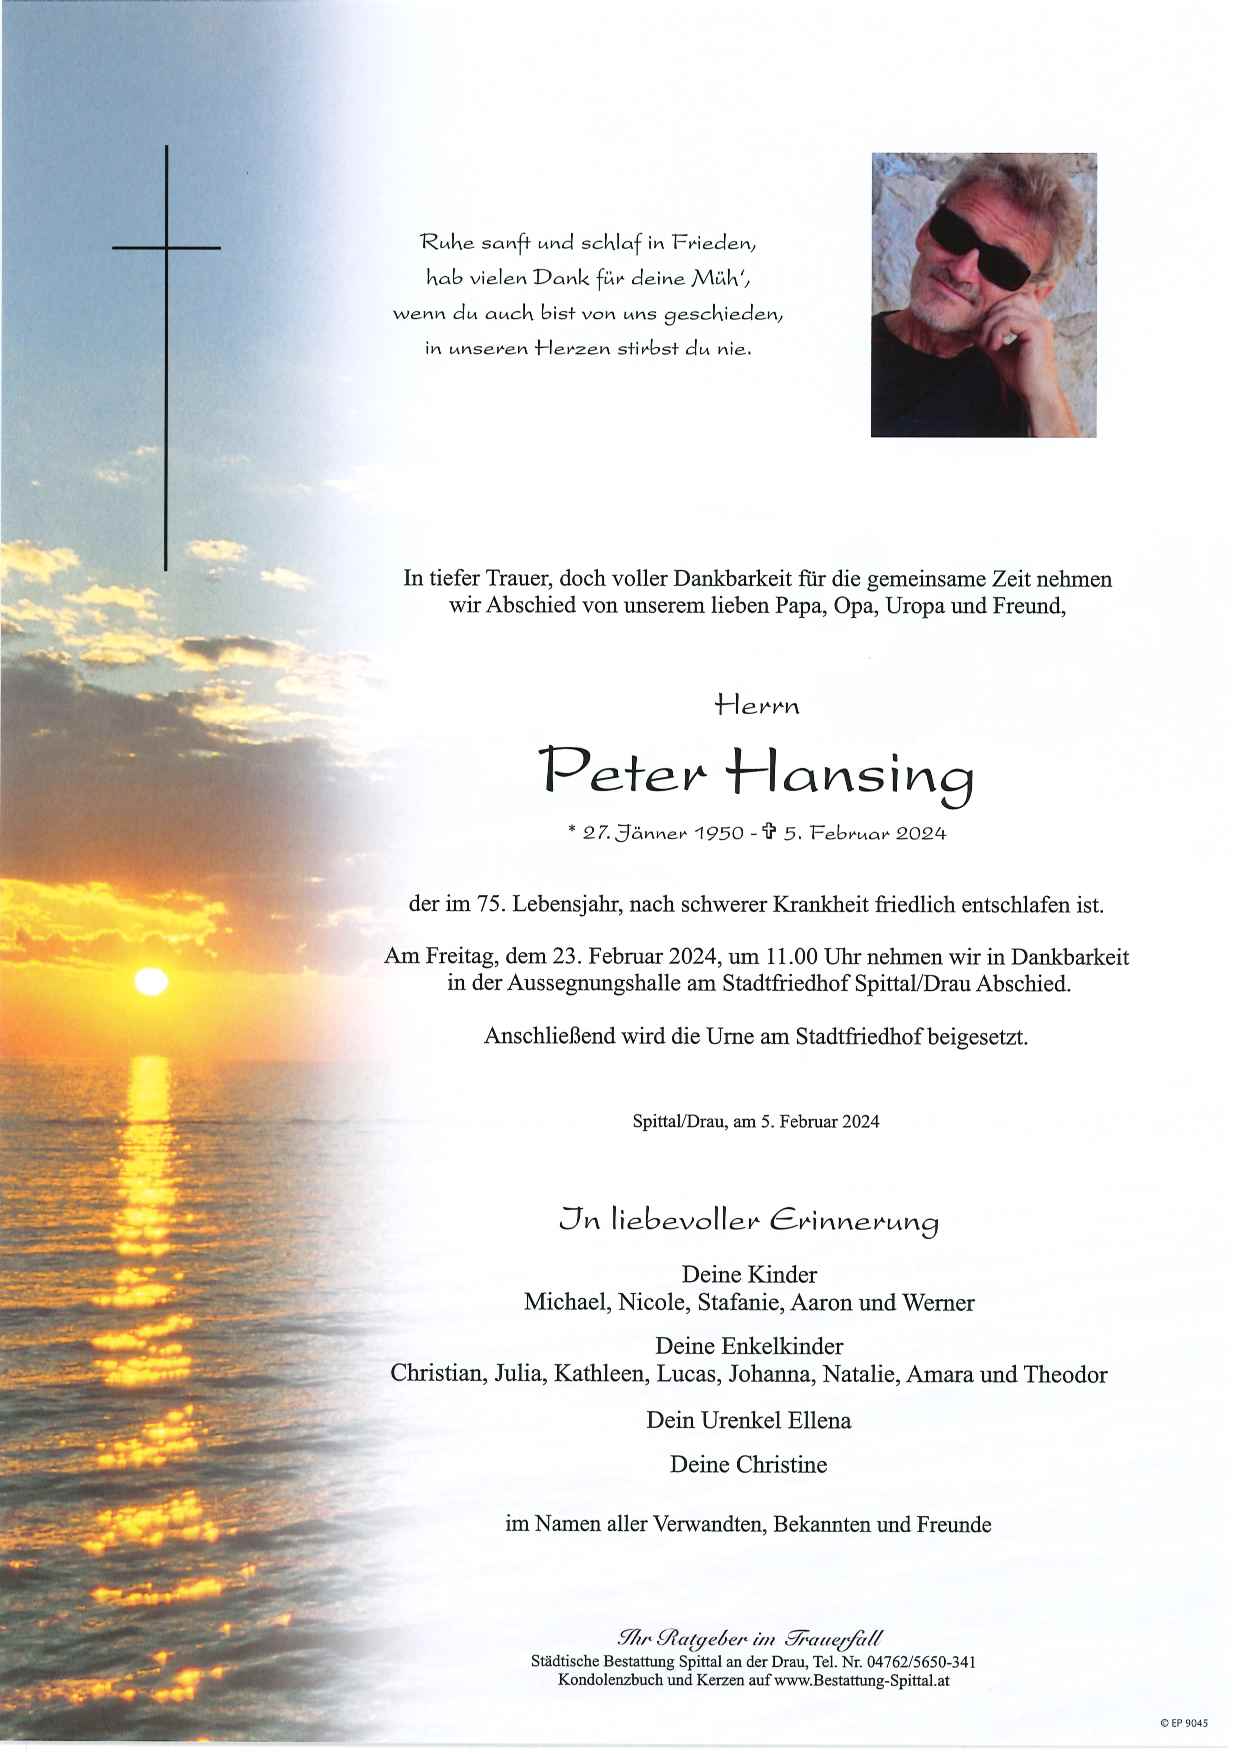 Peter Hansing